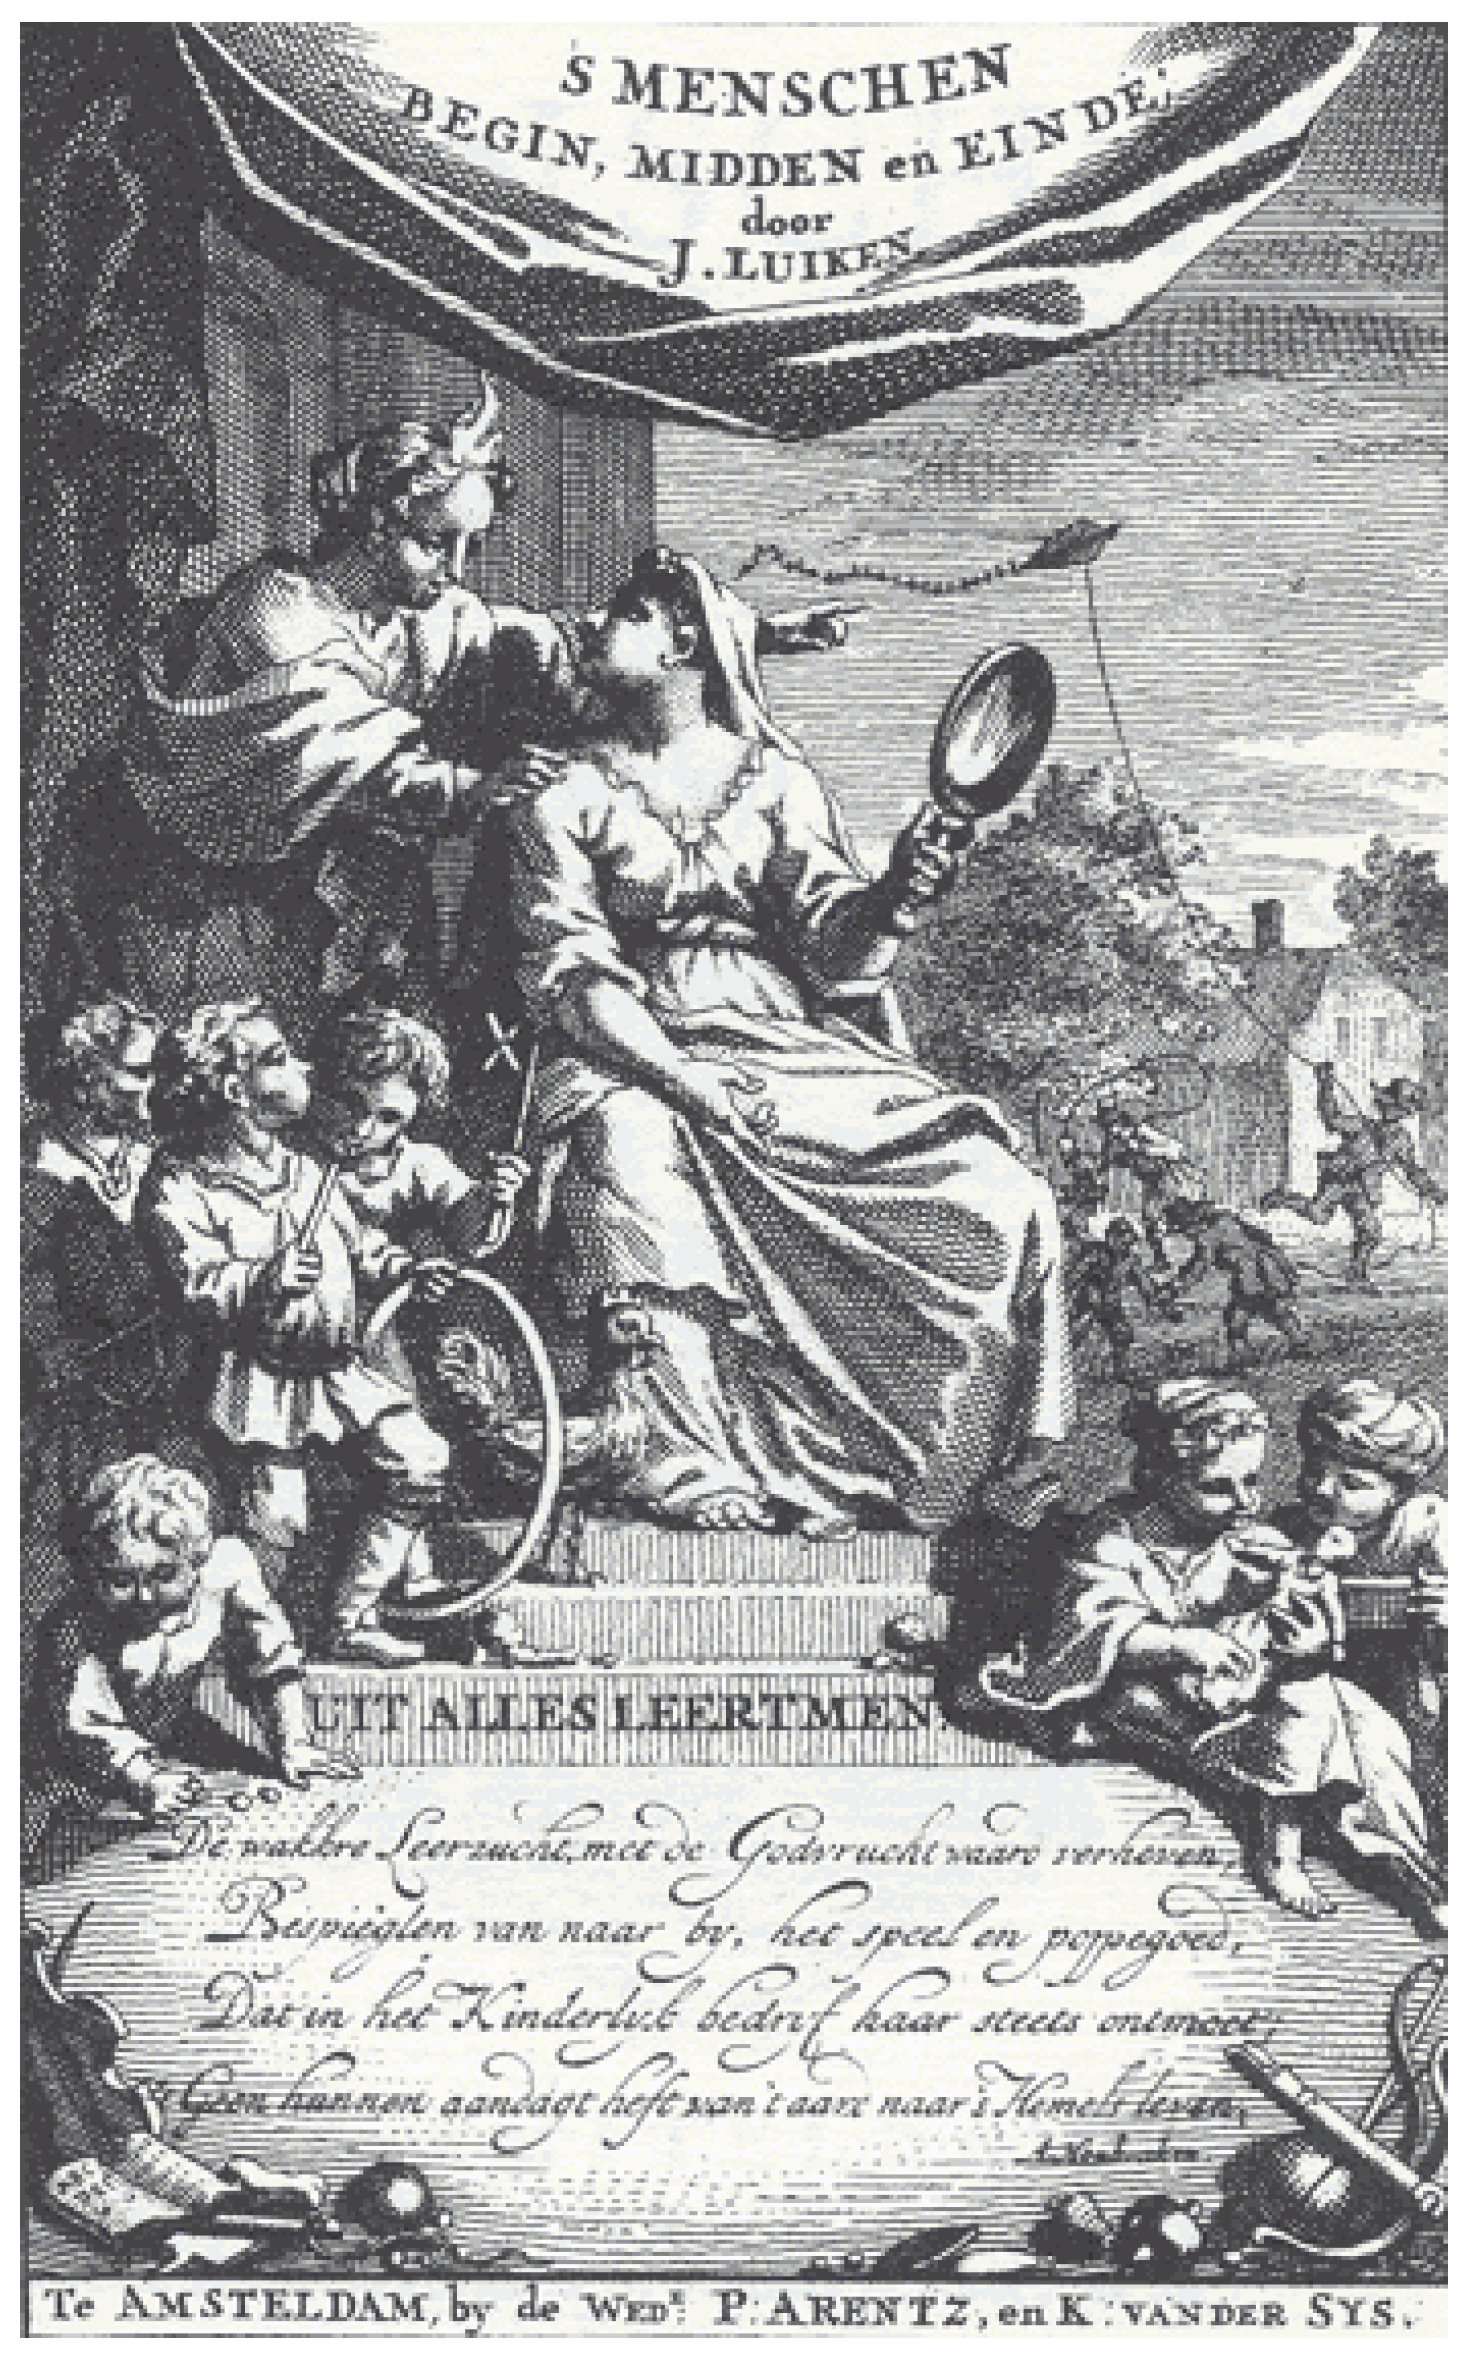 Influence Menschen, Humanities Einde in Begin, Jan Prints: of Luyken’s Free Midden Genre | Full-Text (1712) The en Des | Dutch Painting Emblematic